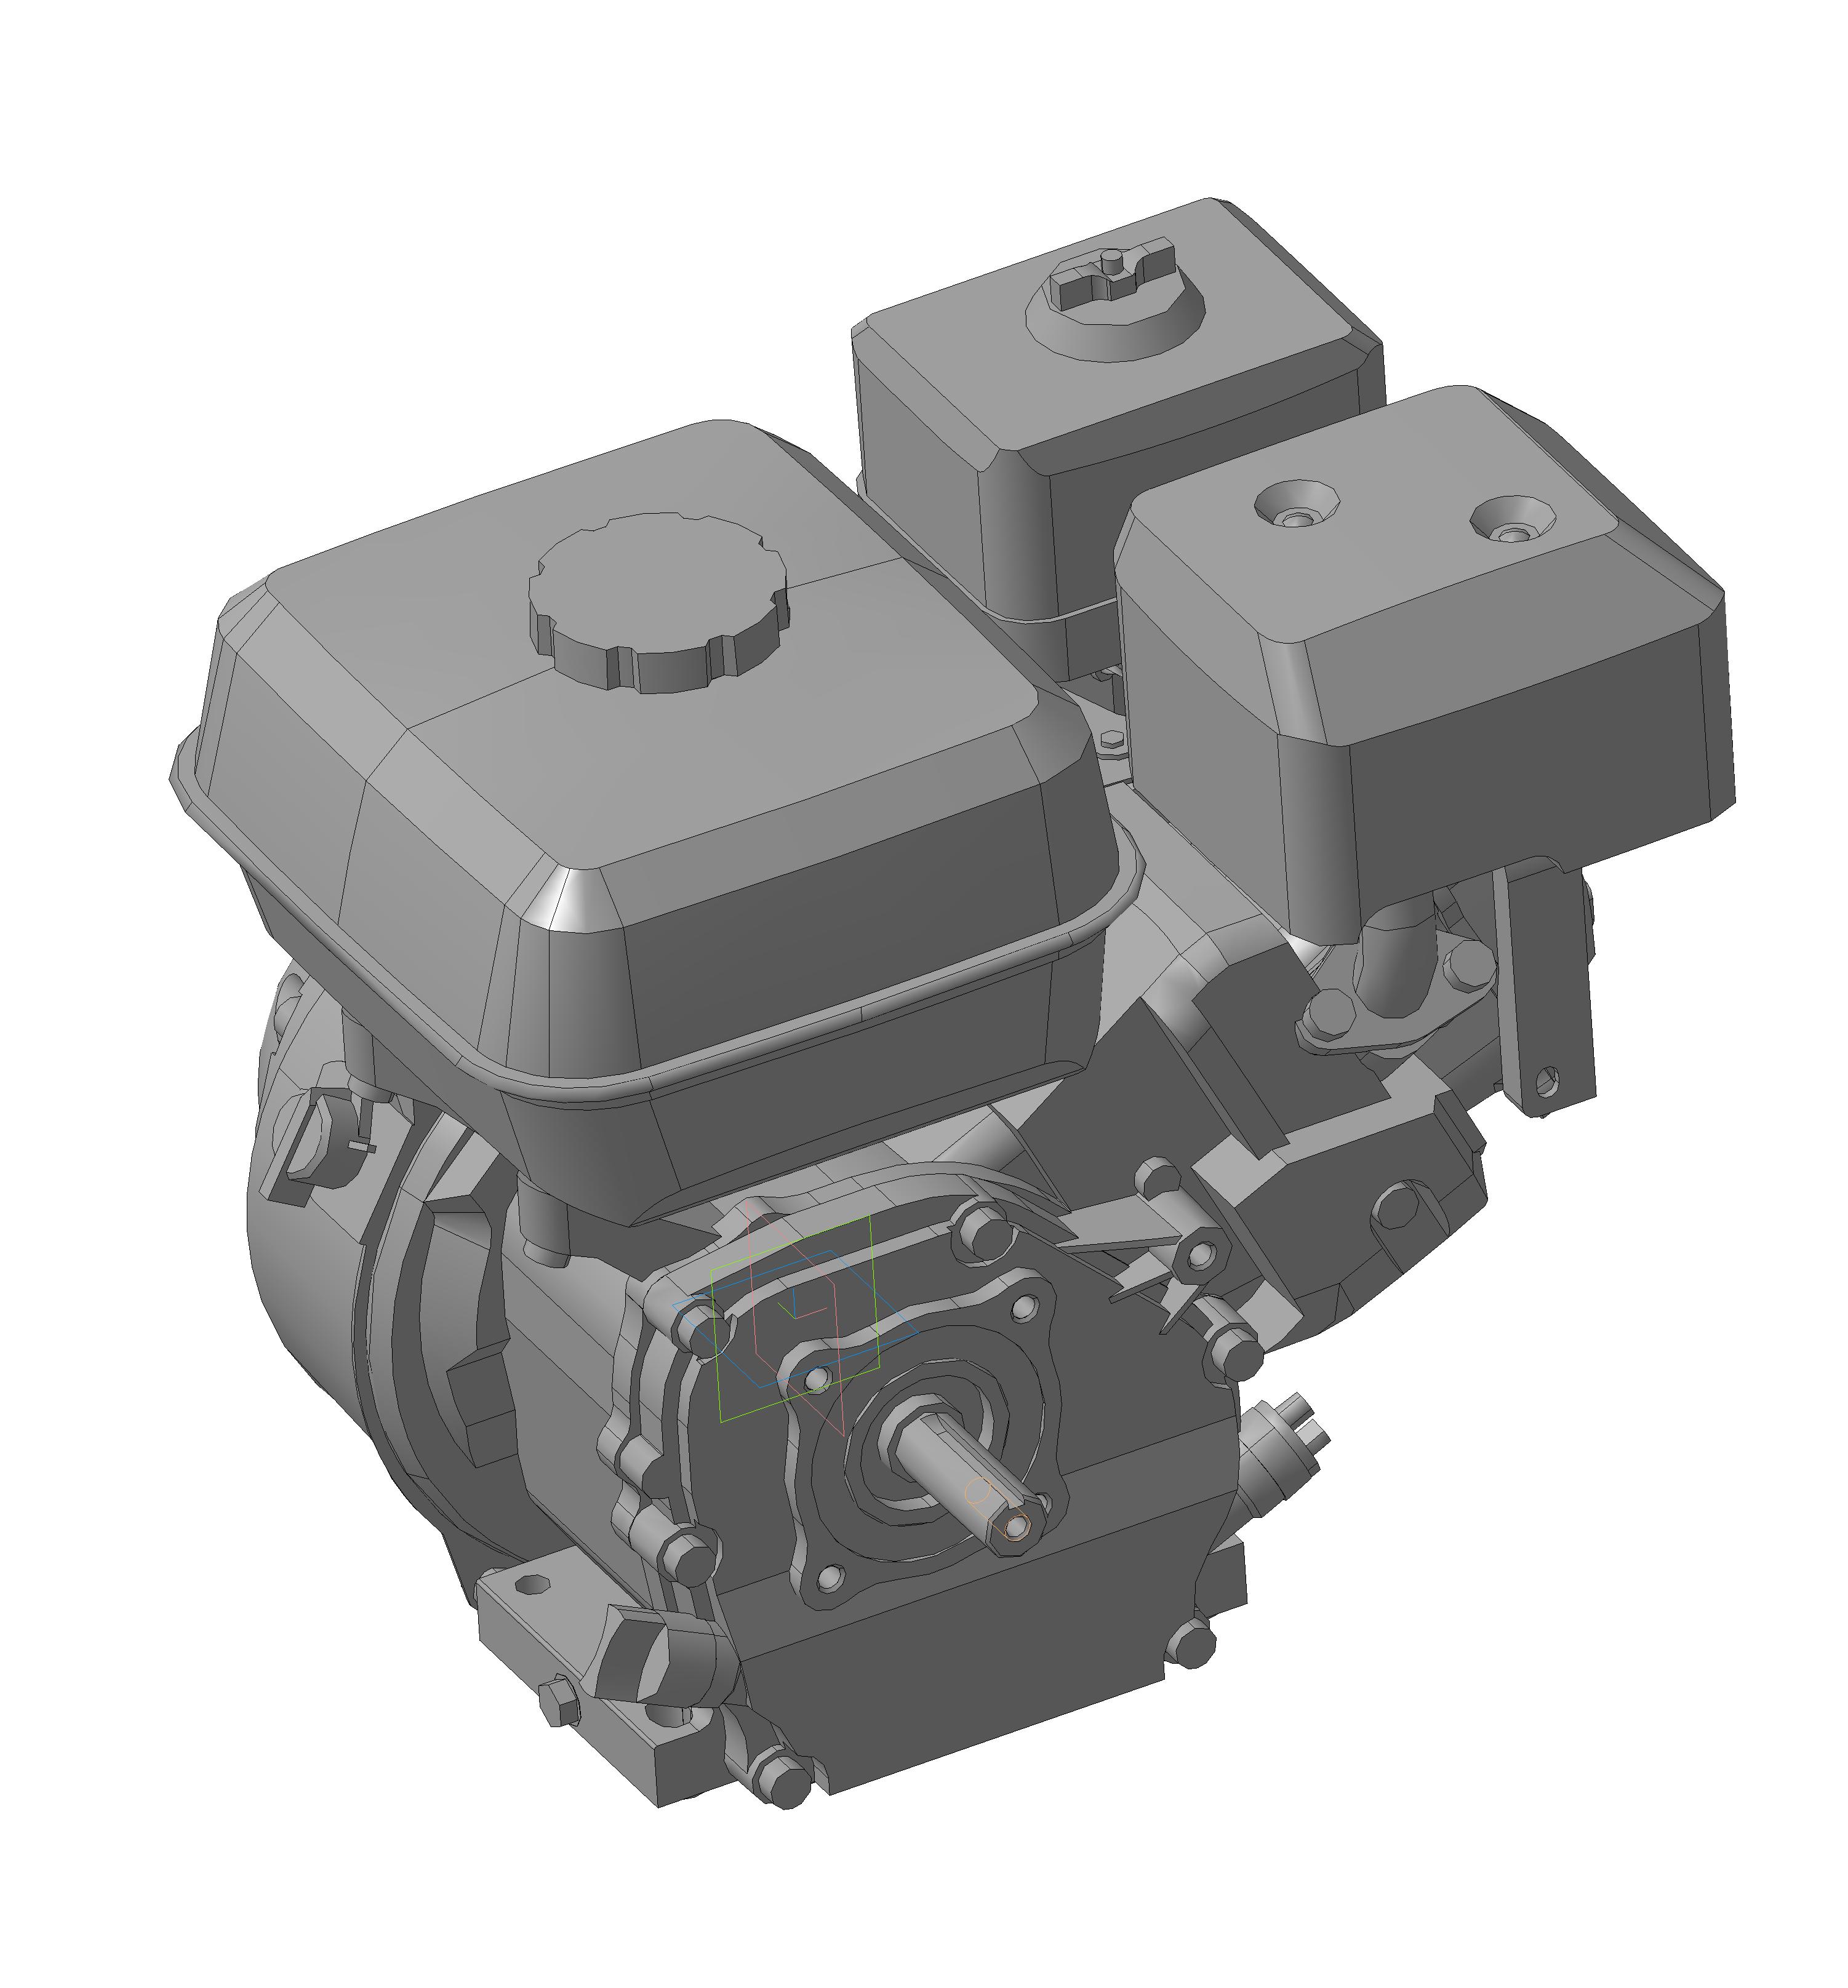 Двигатель Lifan 168F-2 6,5 лошадиных сил - Чертежи, 3D Модели, Проекты .